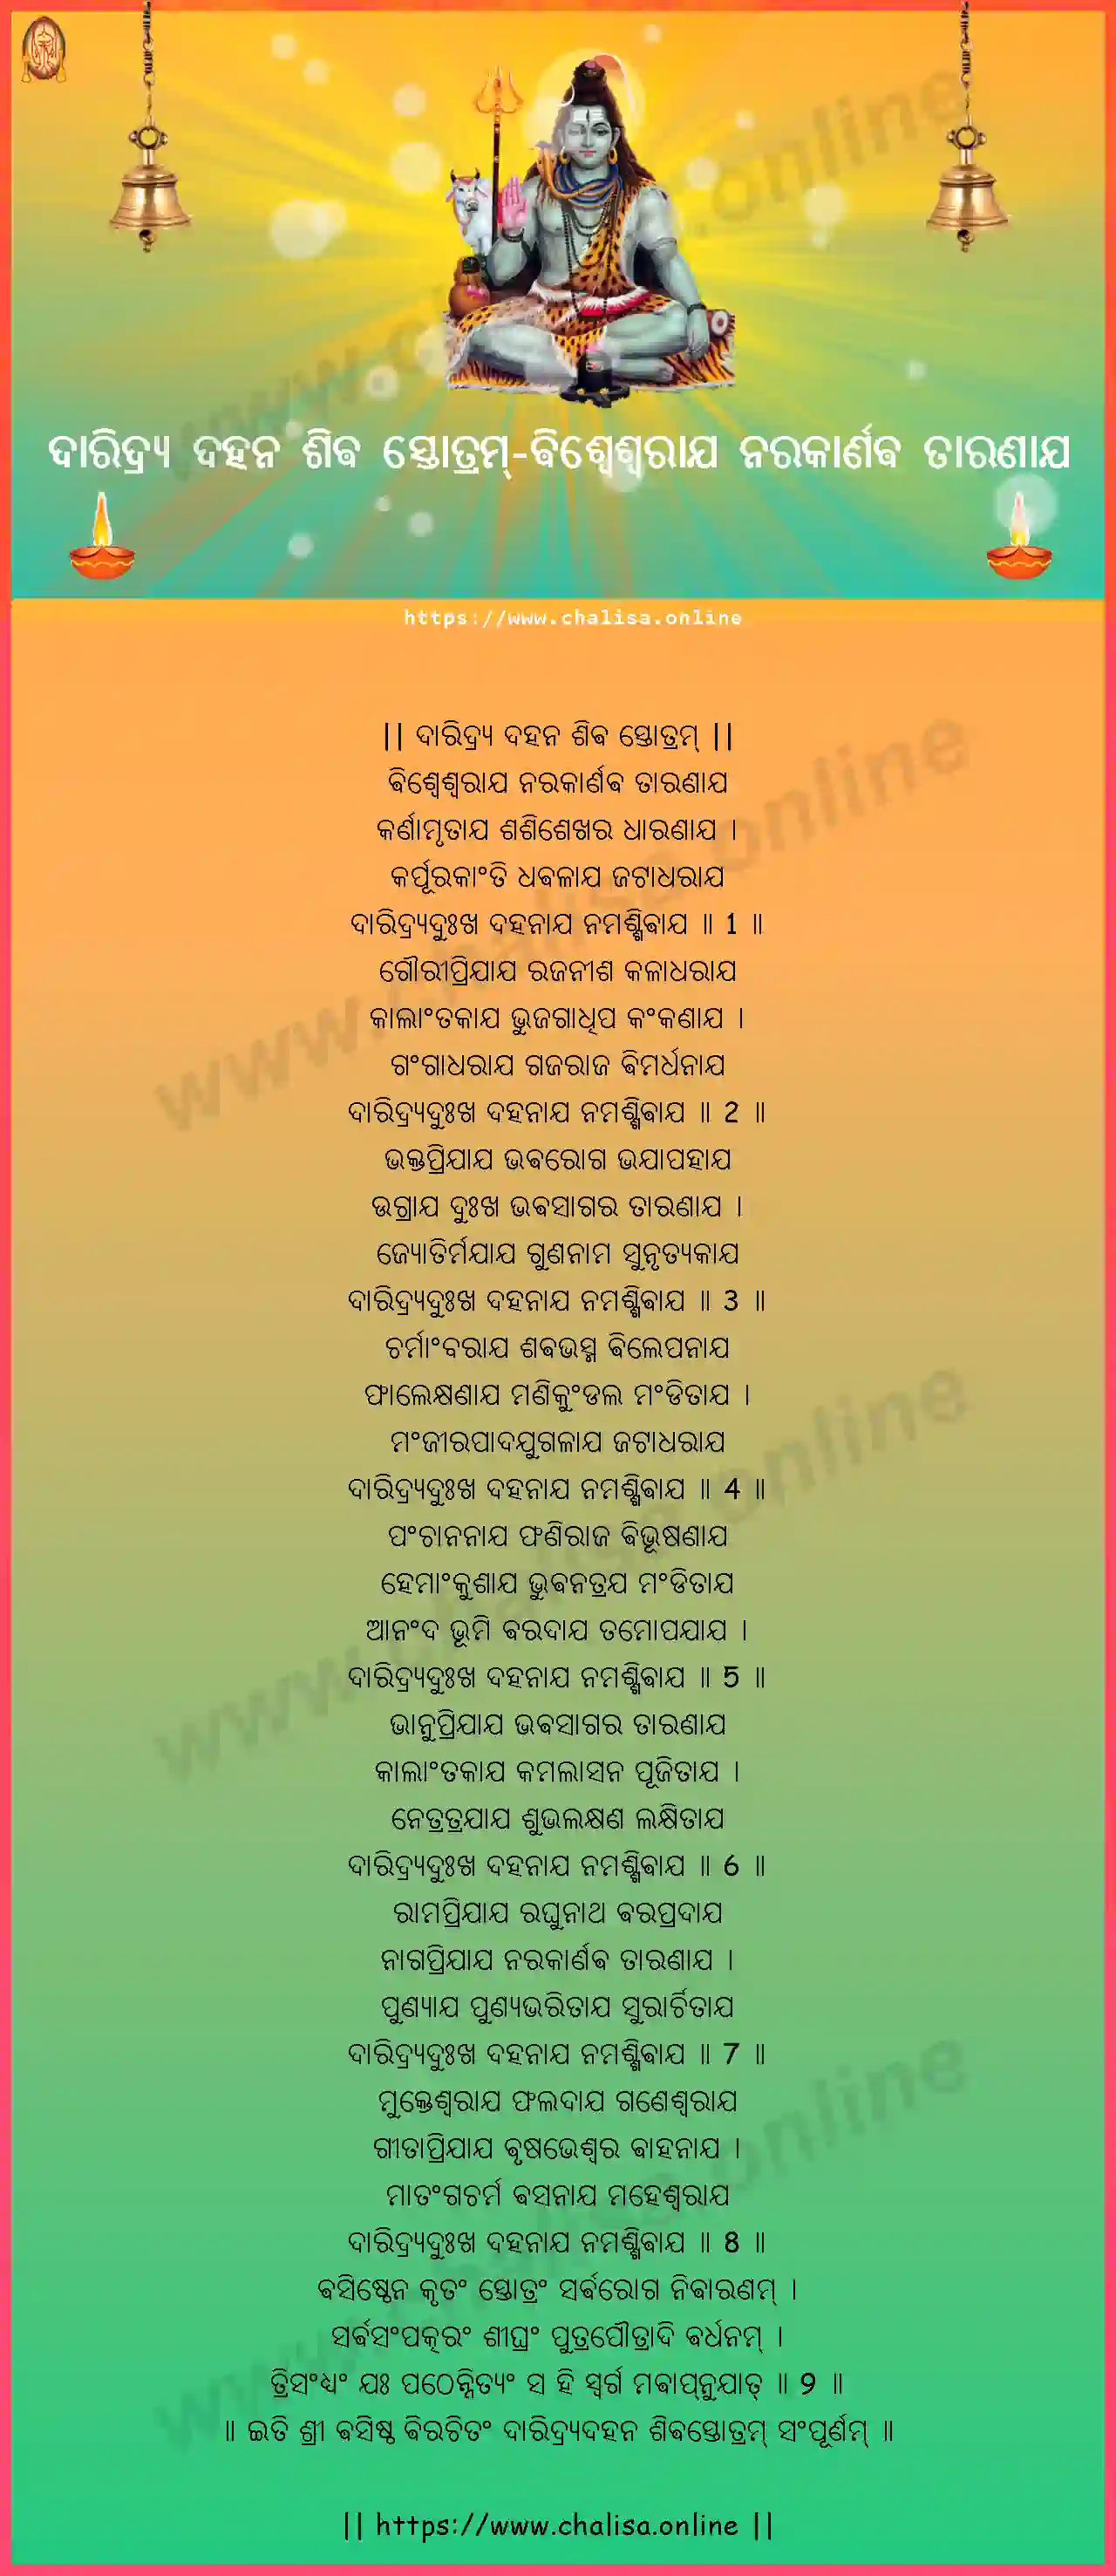 visvesvaraya-narakarnava-daridrya-dahana-shiva-stotram-oriya-oriya-lyrics-download